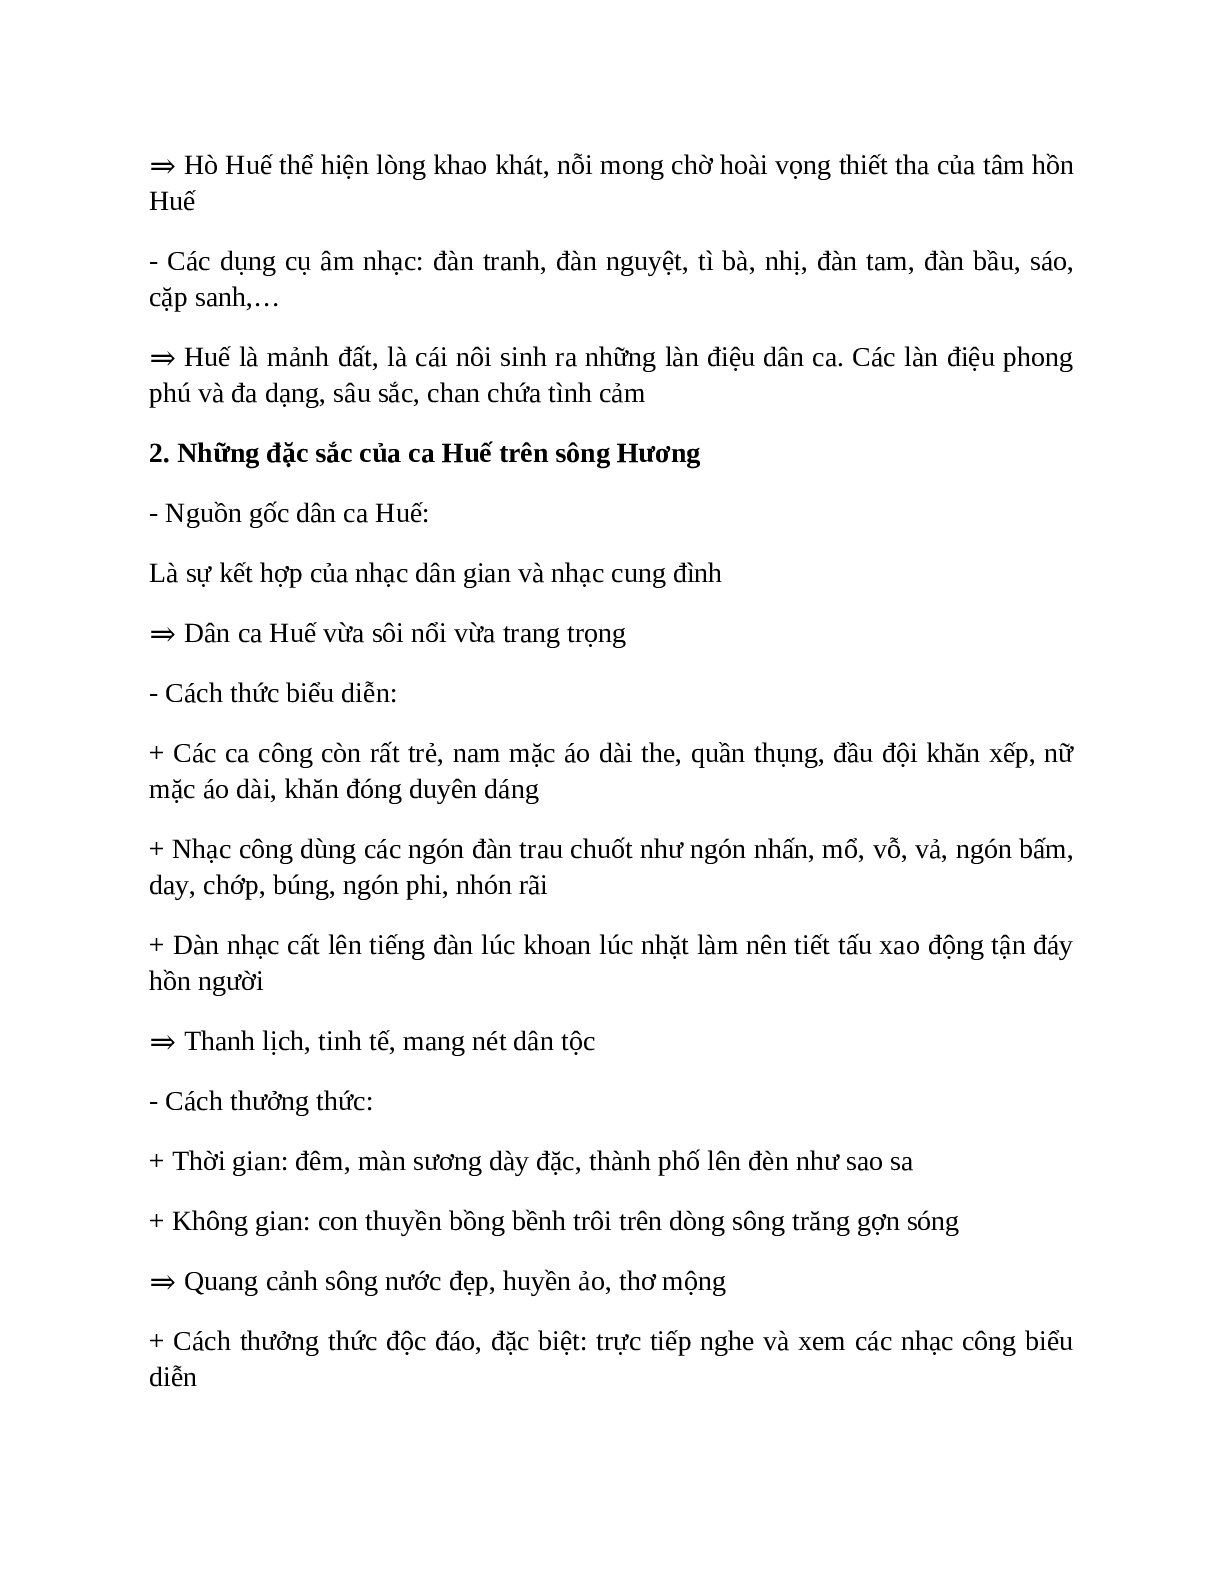 Sơ đồ tư duy bài Ca Huế trên sông Hương dễ nhớ, ngắn nhất - Ngữ văn lớp 7 (trang 3)